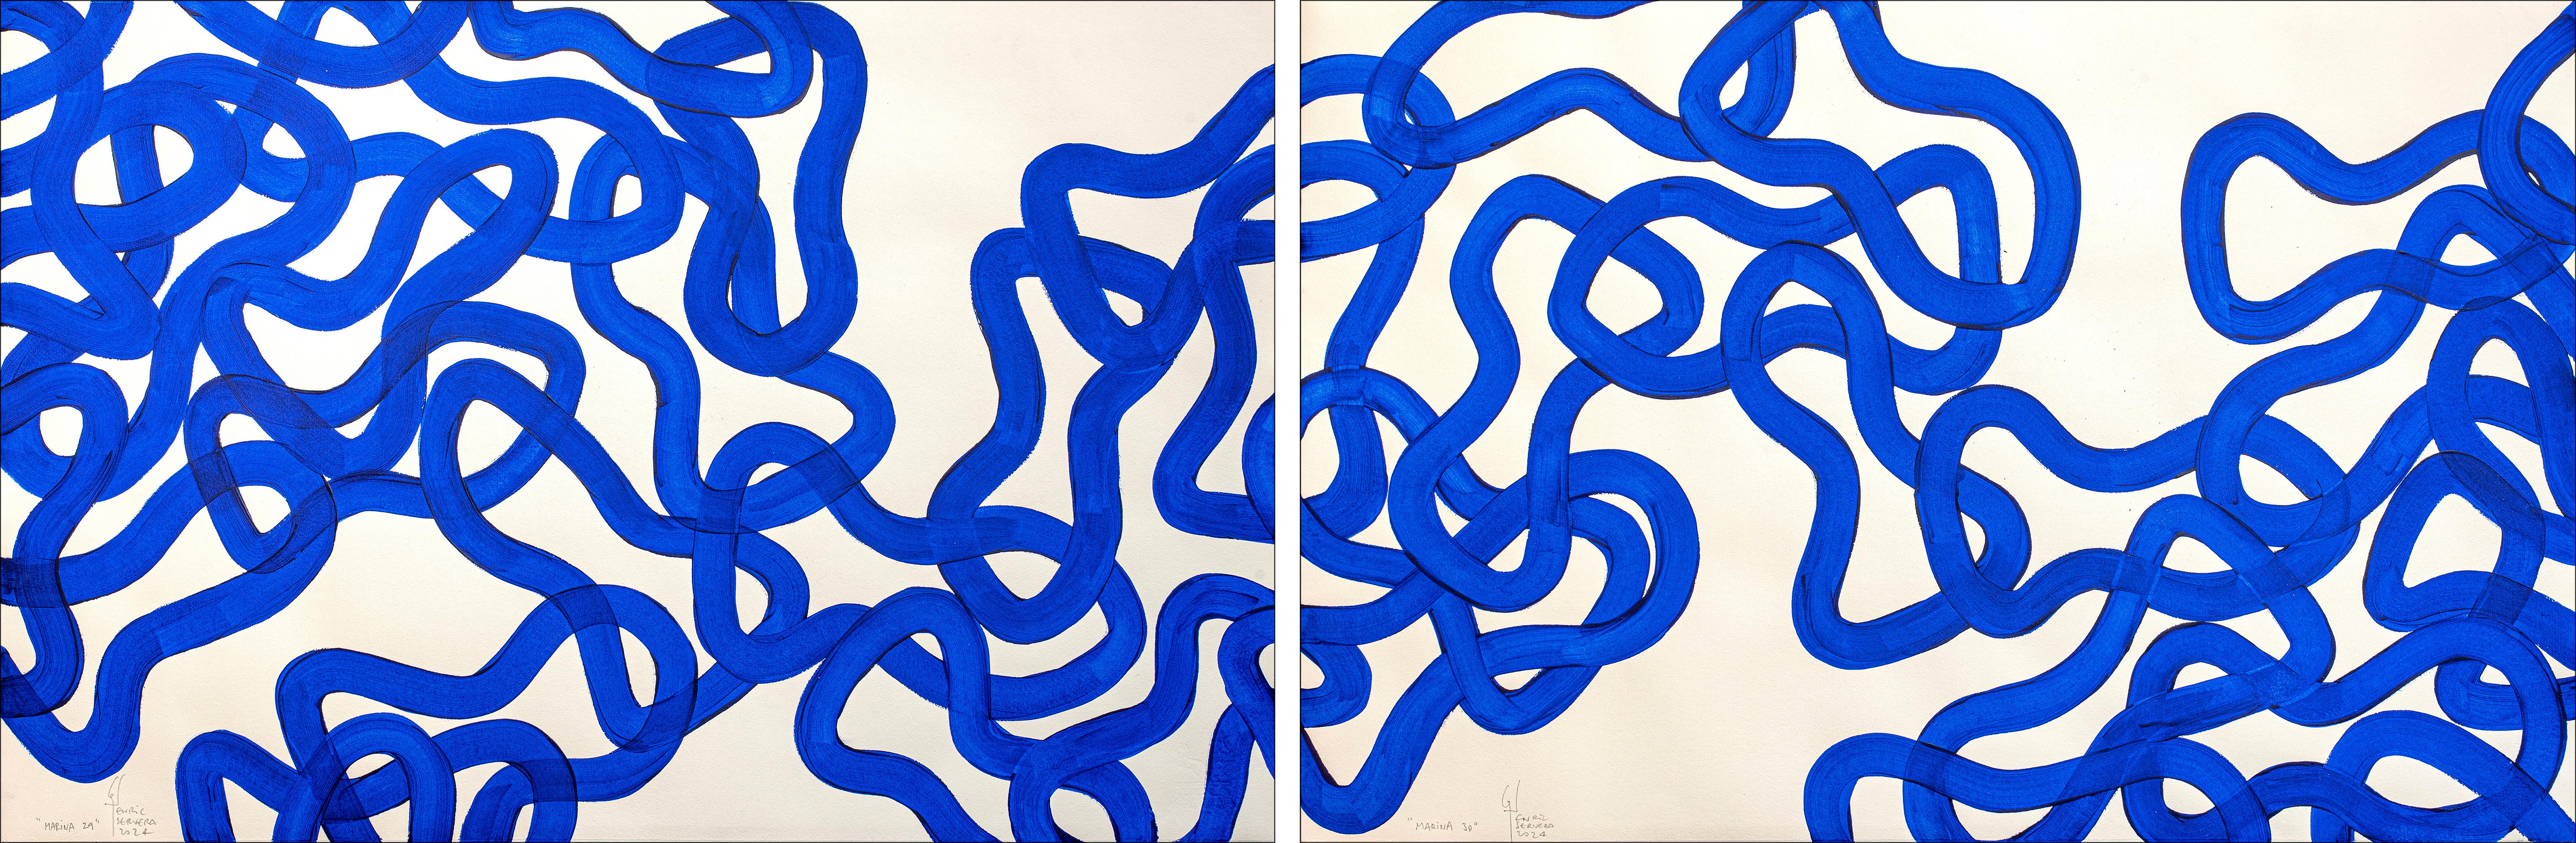 Diptyque bleu marine, gestes abstraits à motif de poissons, peinture marine méditerranéenne